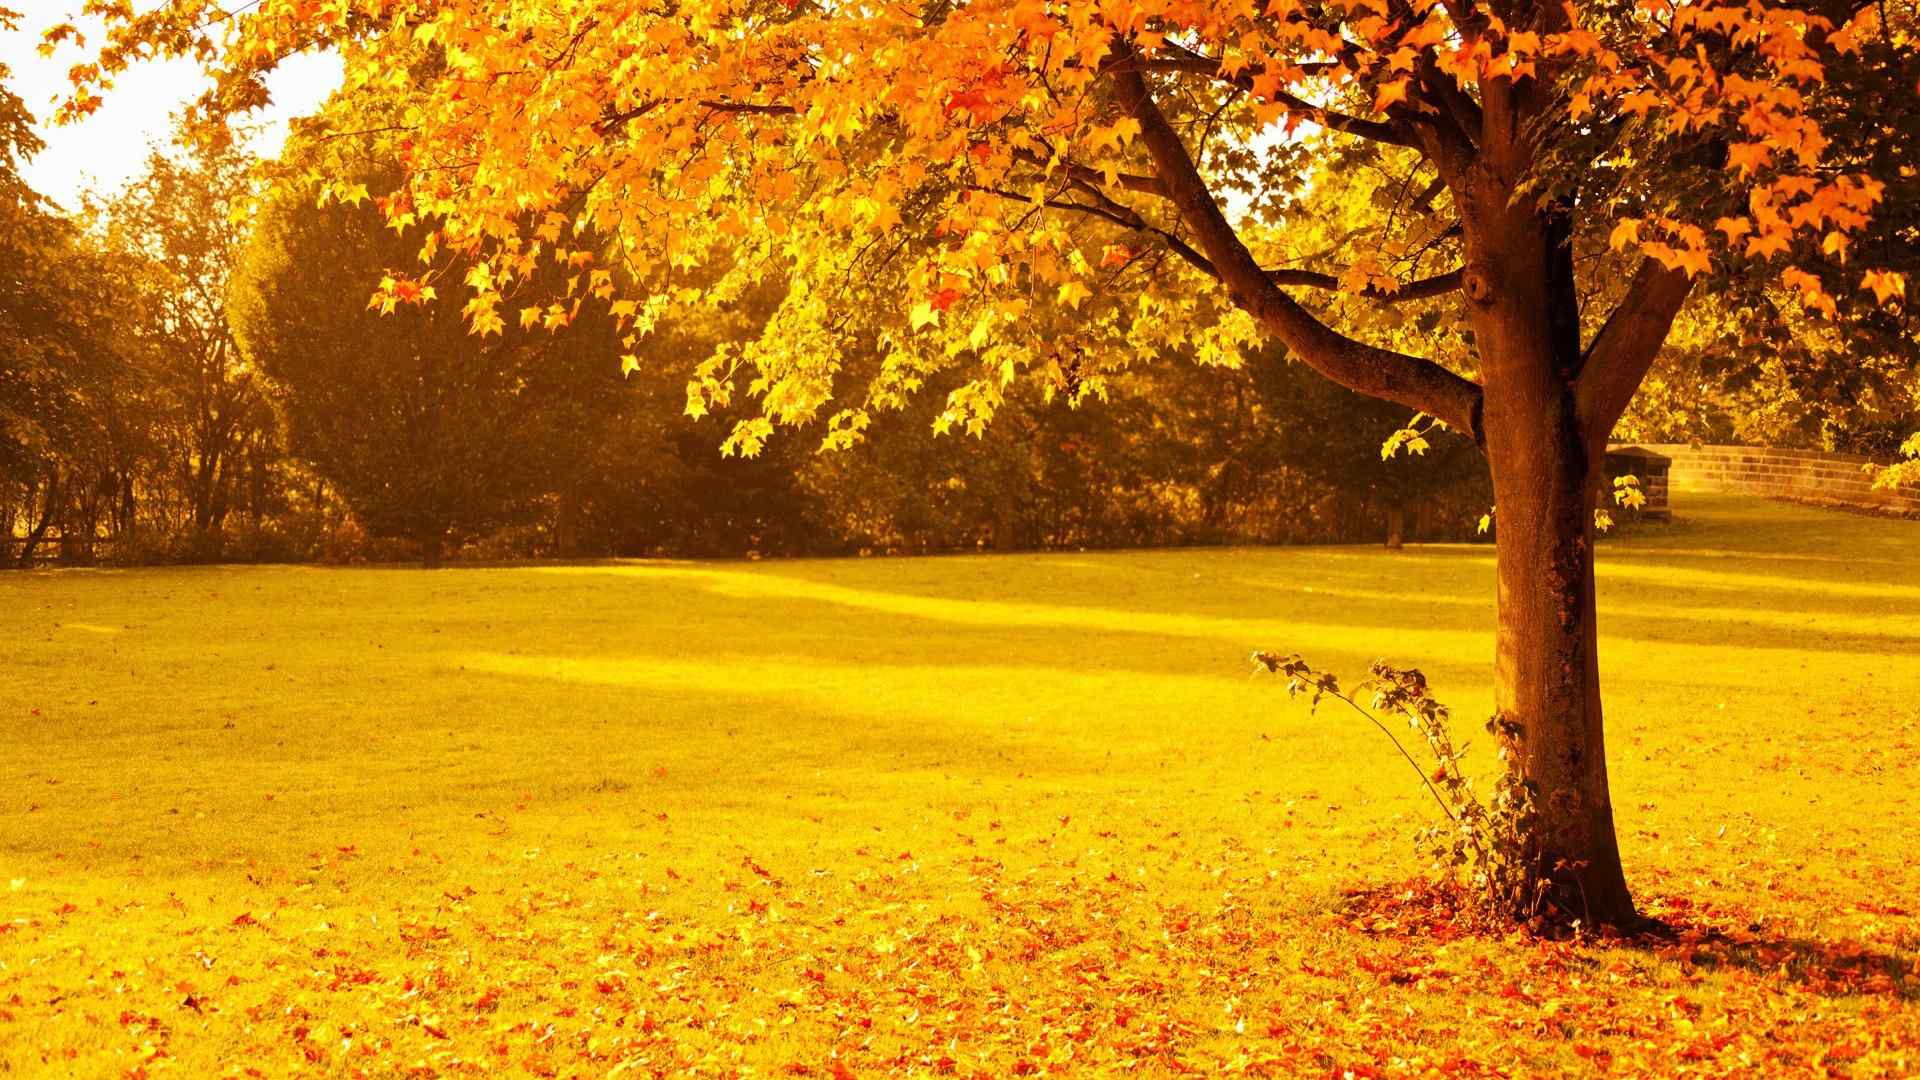 唯美秋天的满地落叶风景桌面壁纸